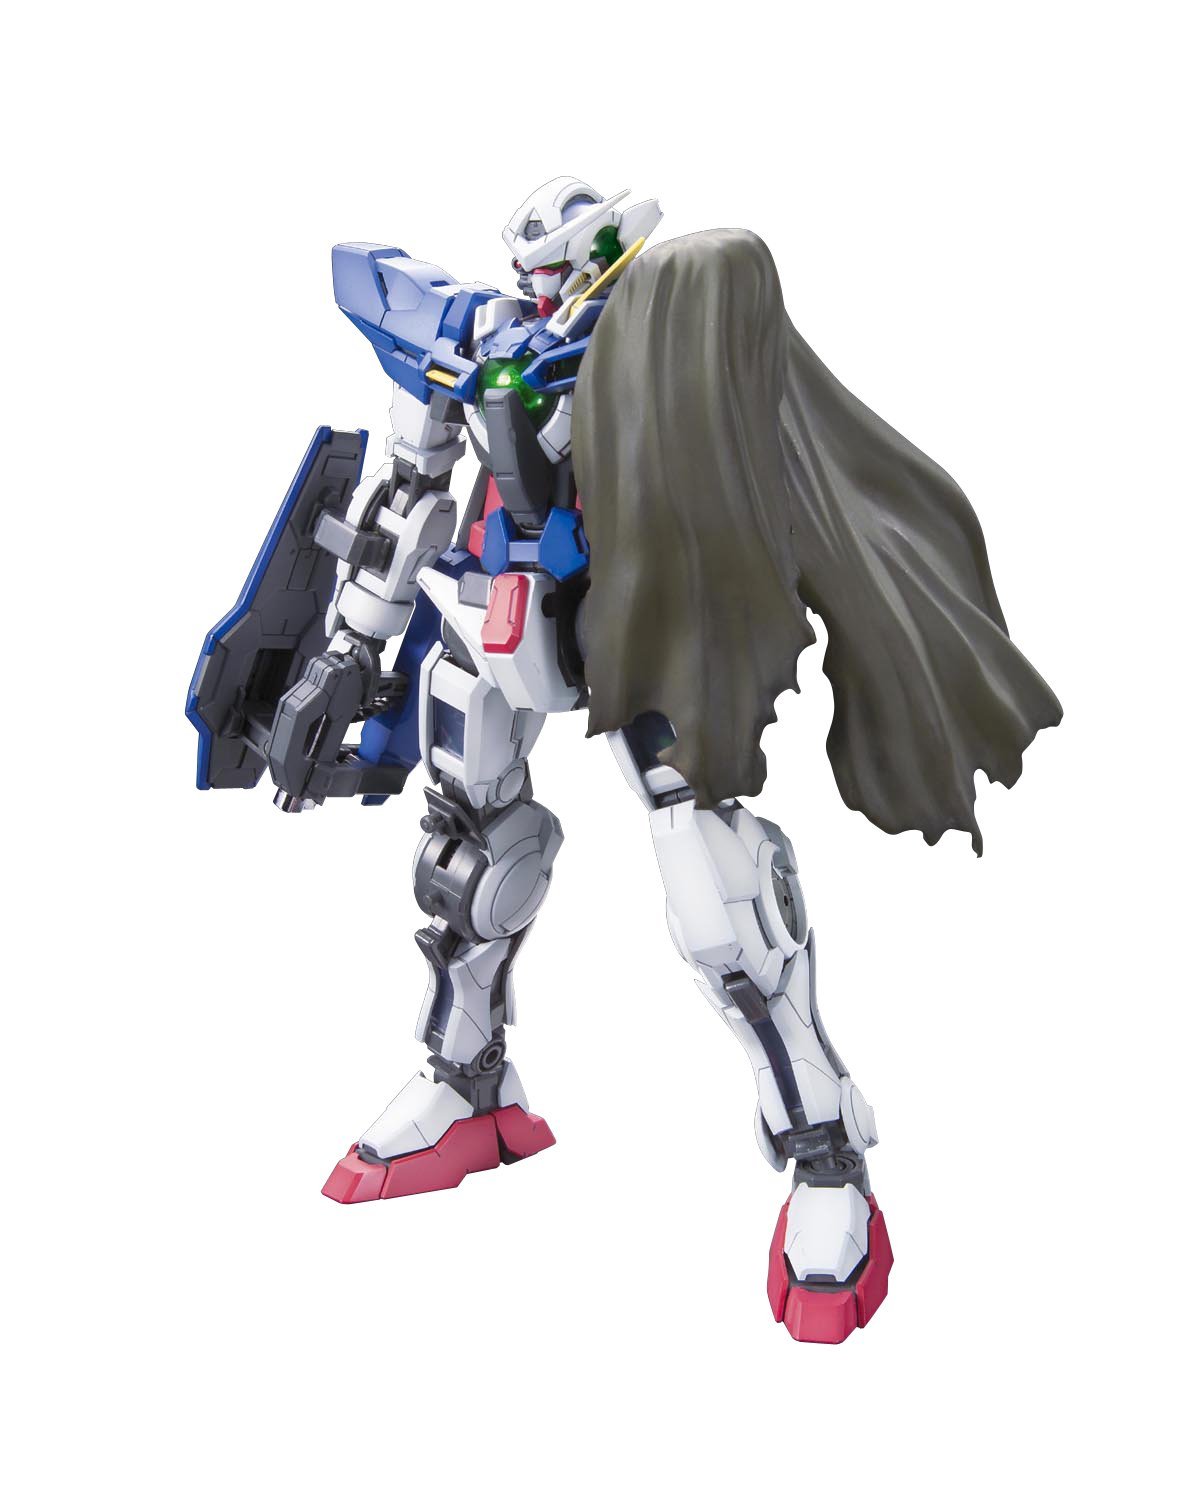 MG GN-001 Gundam Exia Ignition Mode